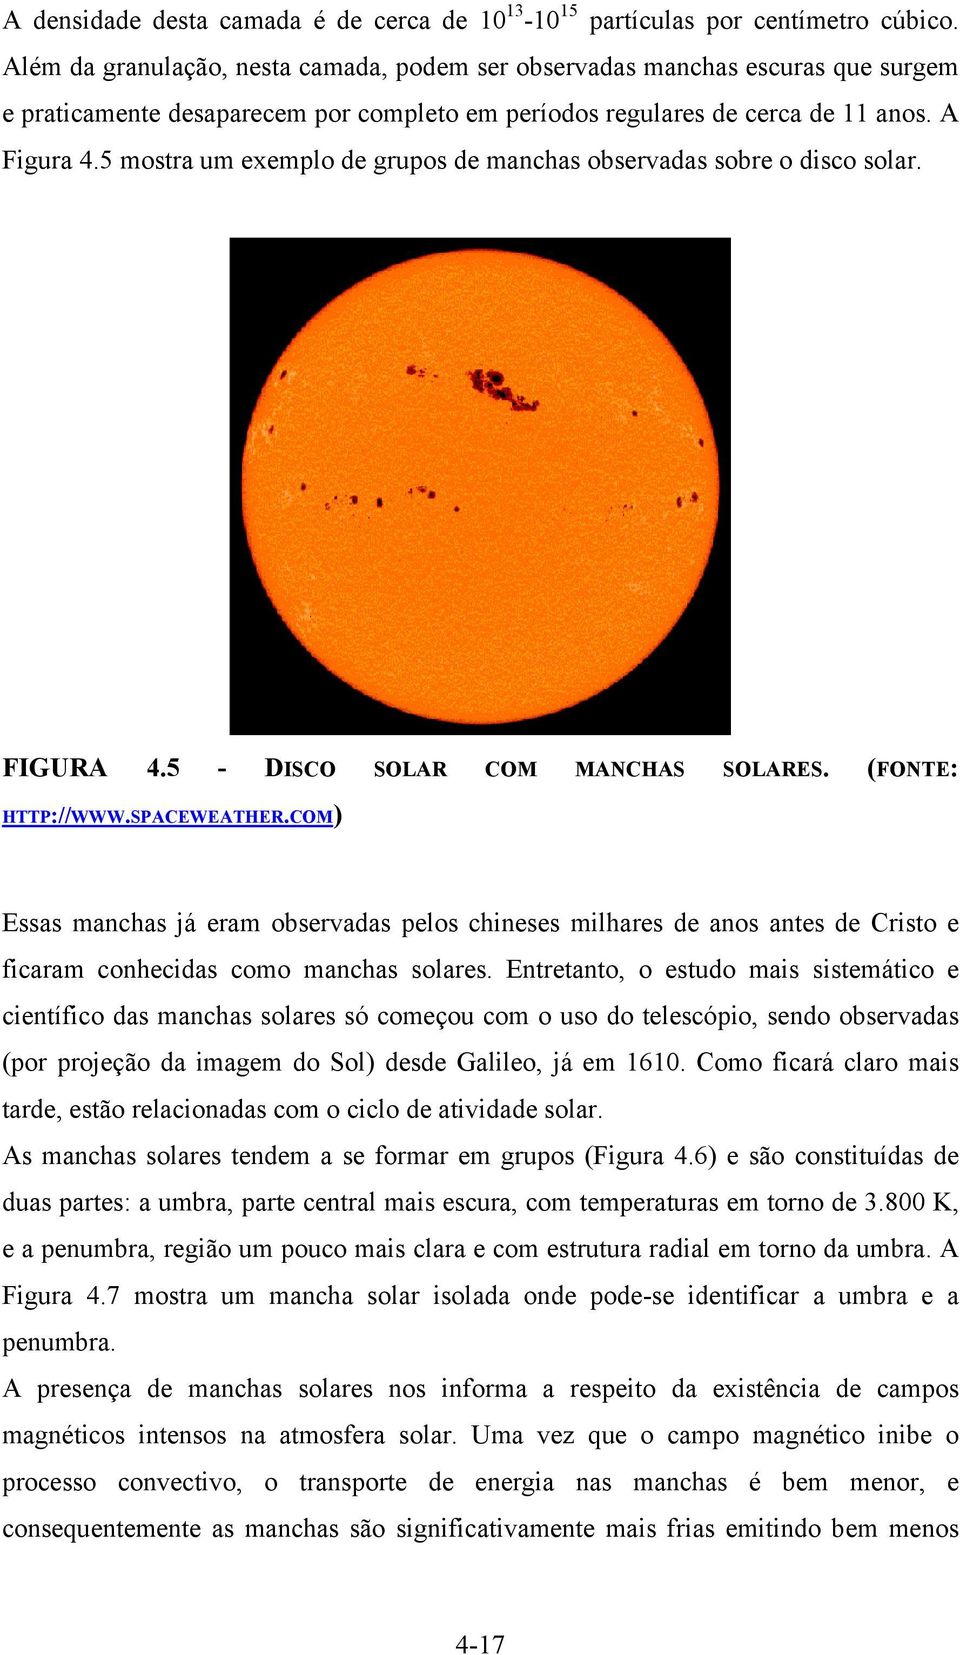 5 mostra um exemplo de grupos de manchas observadas sobre o disco solar. FIGURA 4.5 - DISCO SOLAR COM MANCHAS SOLARES. (FONTE: HTTP://WWW.SPACEWEATHER.